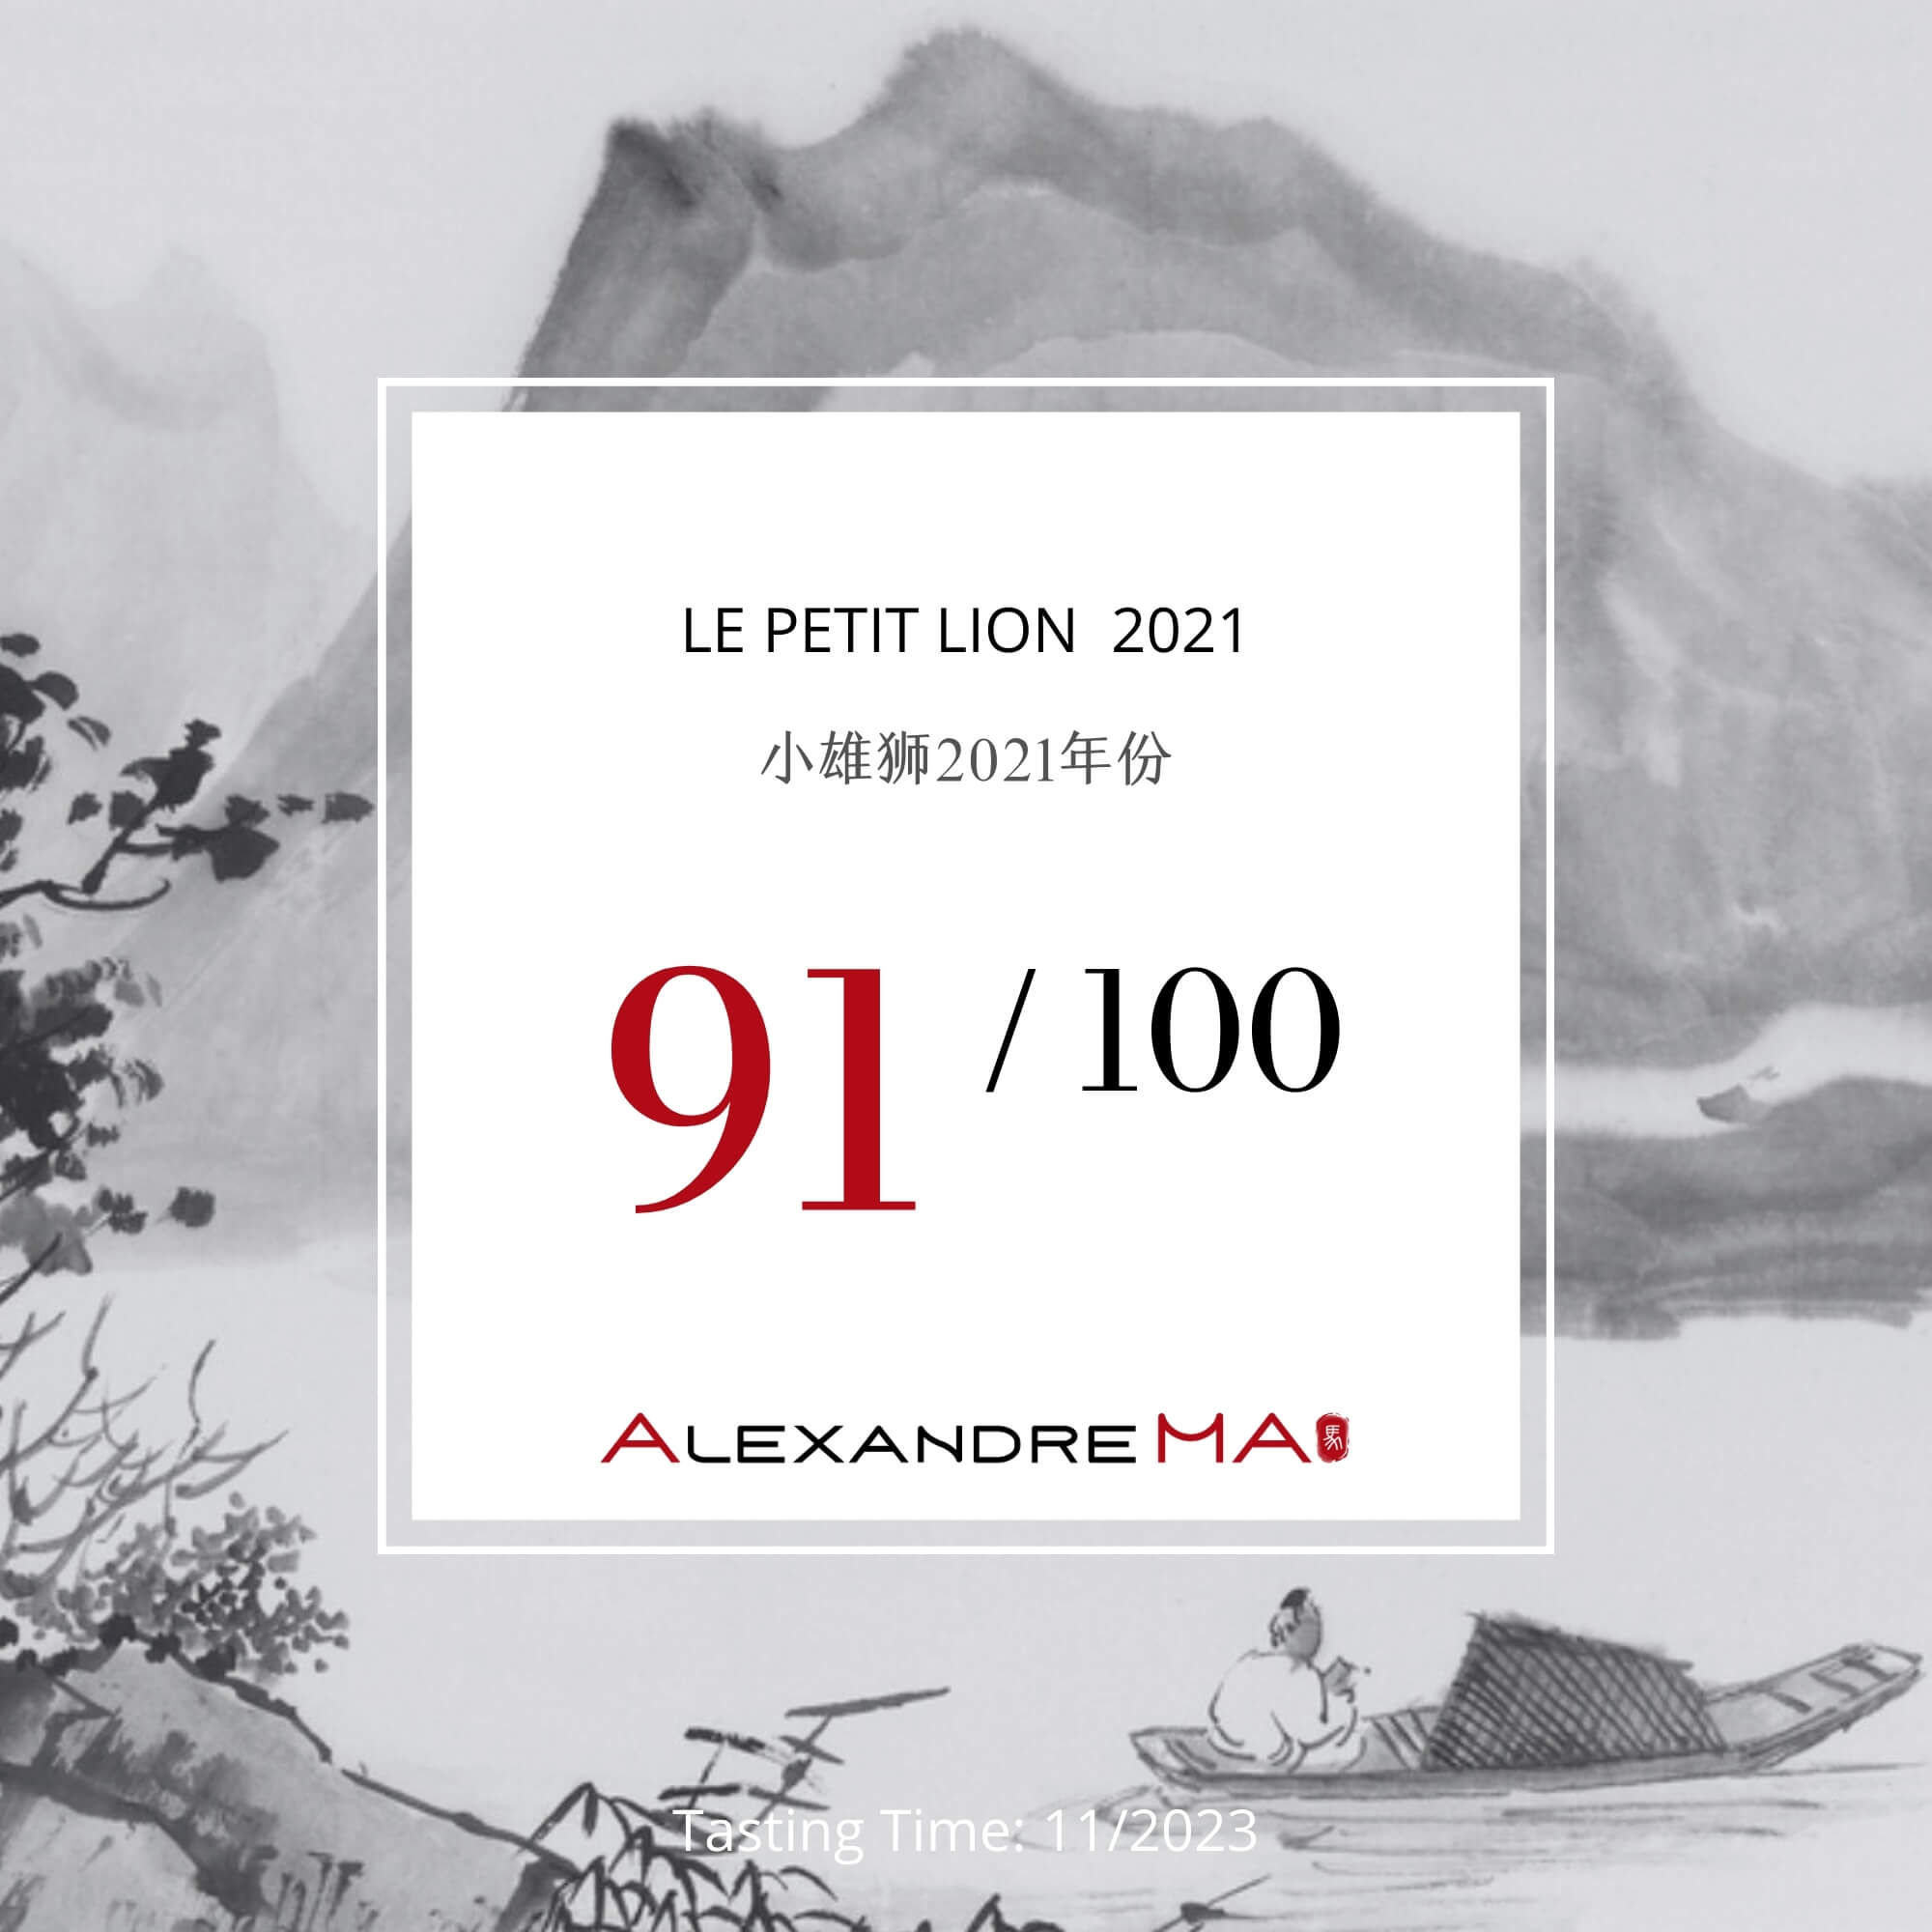 Le Petit Lion 2021 小雄狮 - Alexandre Ma